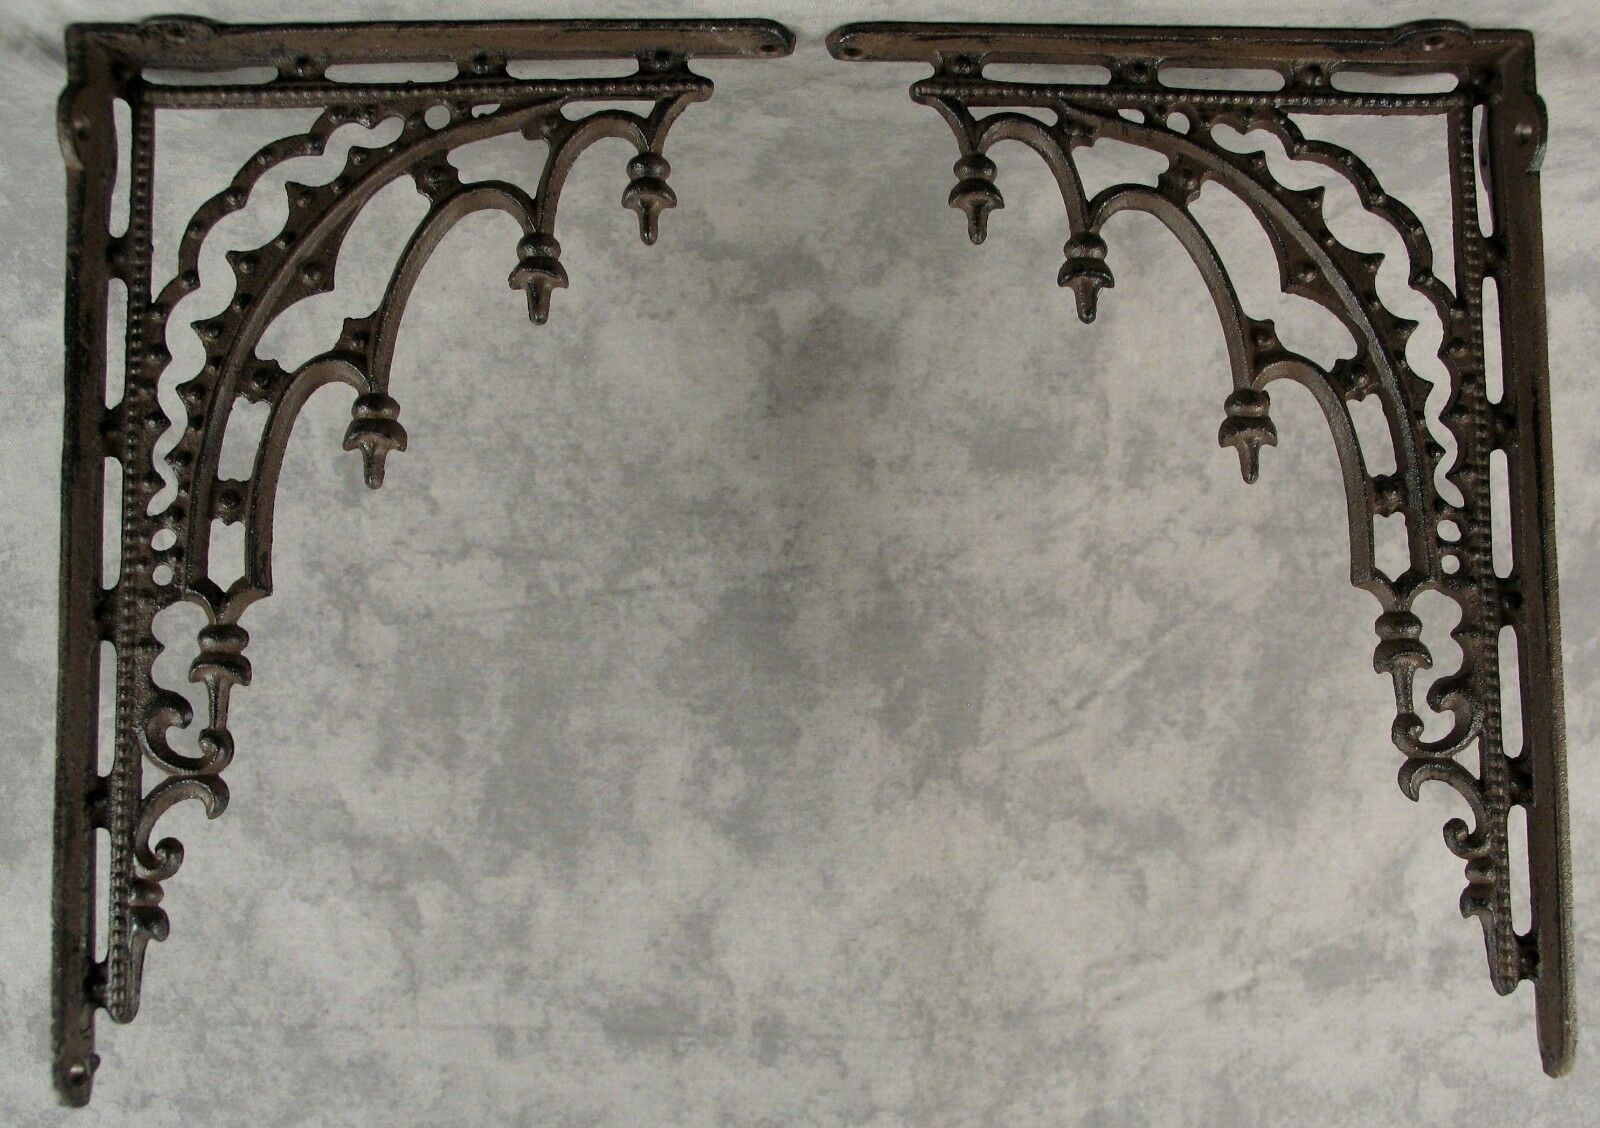 2 Architectural Gothic Renaissance Cast Iron Shelf Wall Corner Brackets Brown